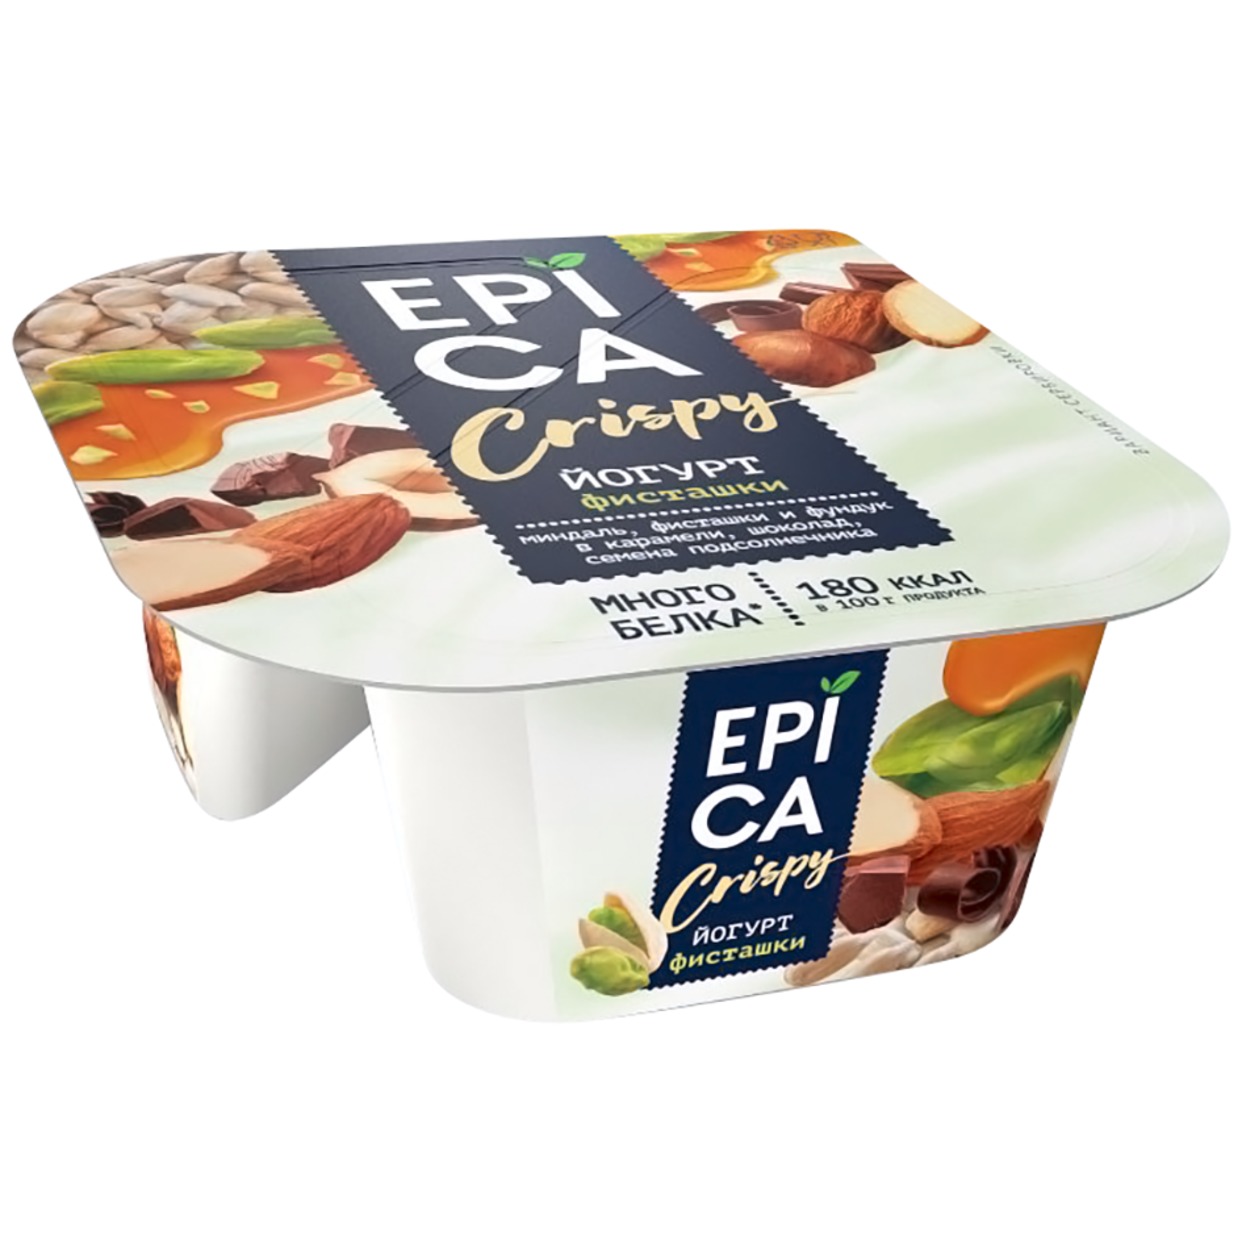 Йогурт Epica Crispy Фисташки 4.8% + Смесь из семян орехов и темного шоколада 140г по акции в Пятерочке